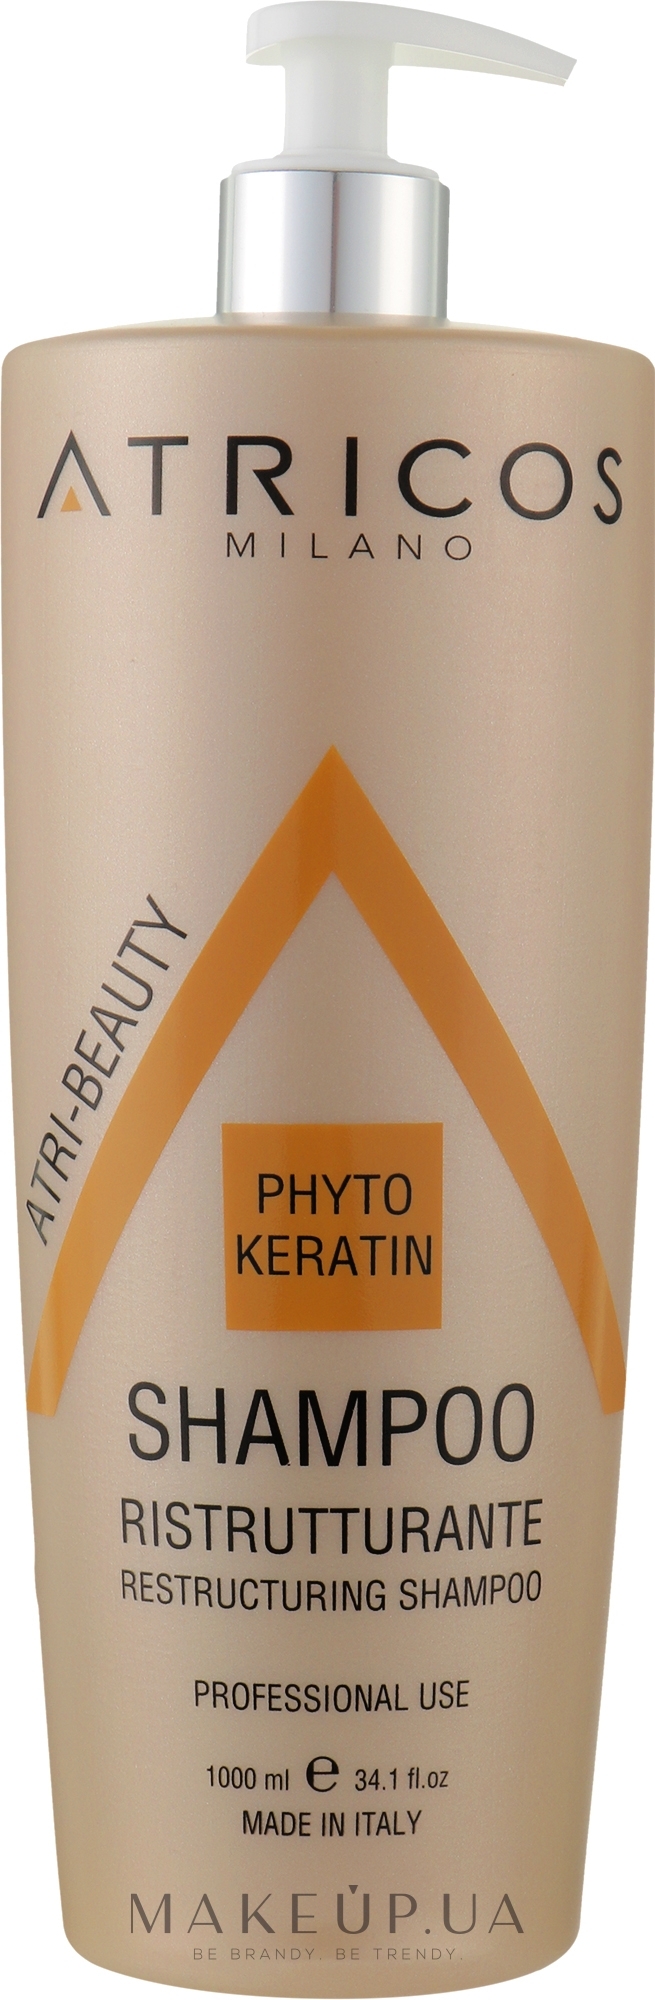 Шампунь з фітокератином для реструктуризації волосся - Atricos Phyto Keratin Restructuring Shampoo — фото 1000ml